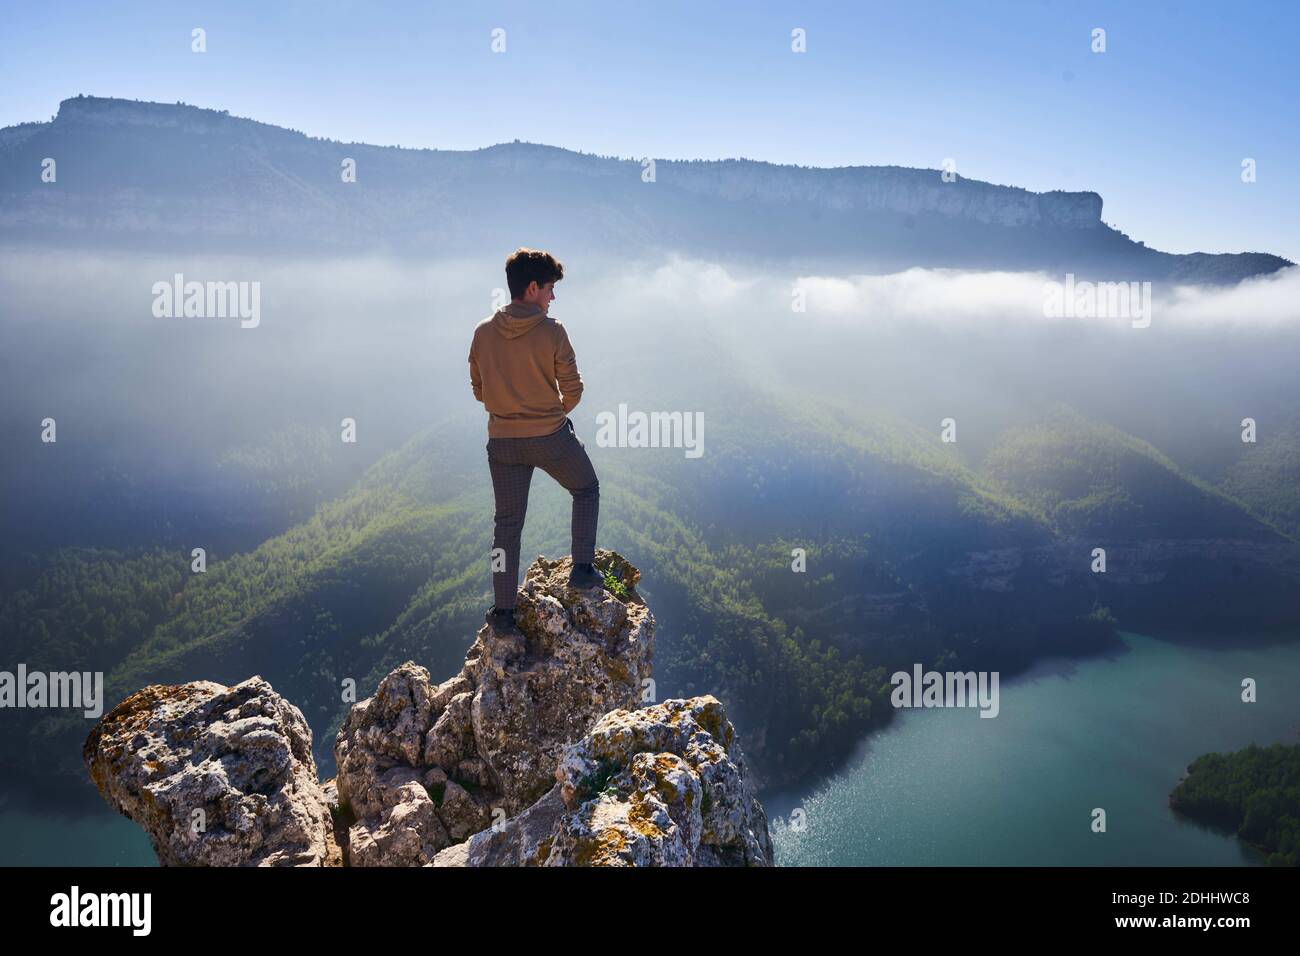 Imagen de un acantilado sobre un rio con niebla al fondo y un hombre observando el paisaje.Tomada en la Comundiad Valenciana, Stock Photo